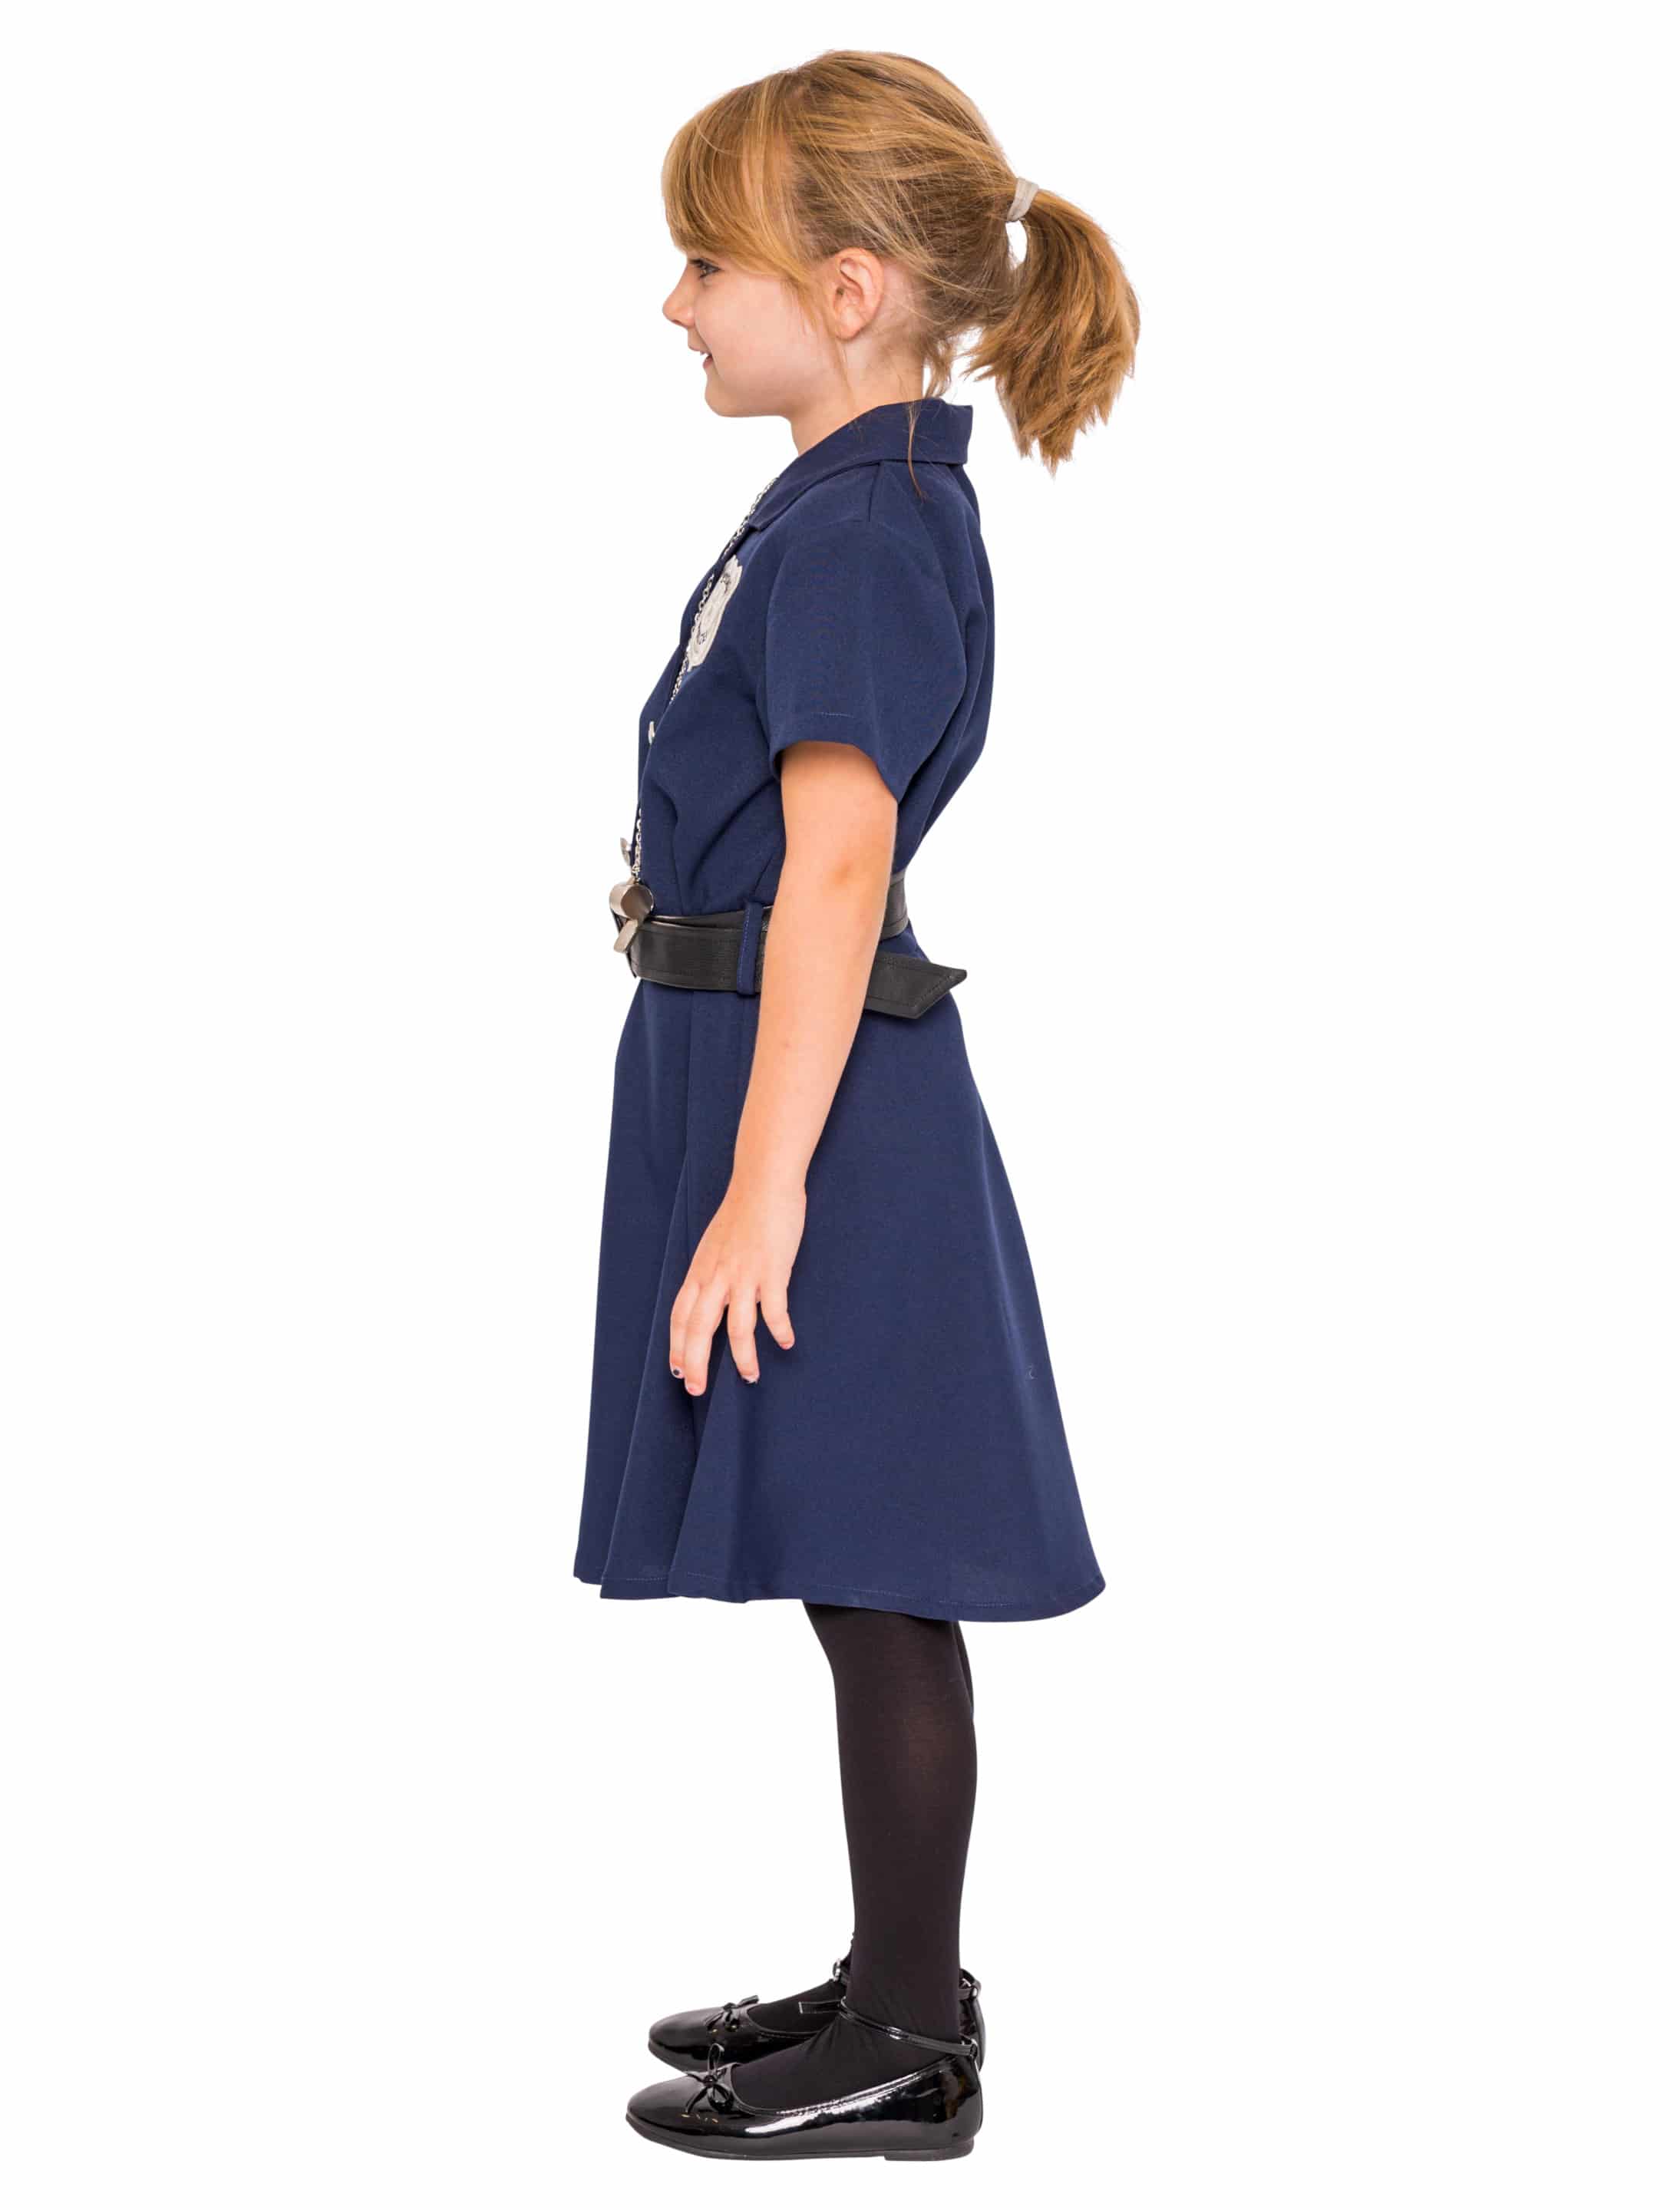 Kleid Police Kinder 2-tlg. blau 128